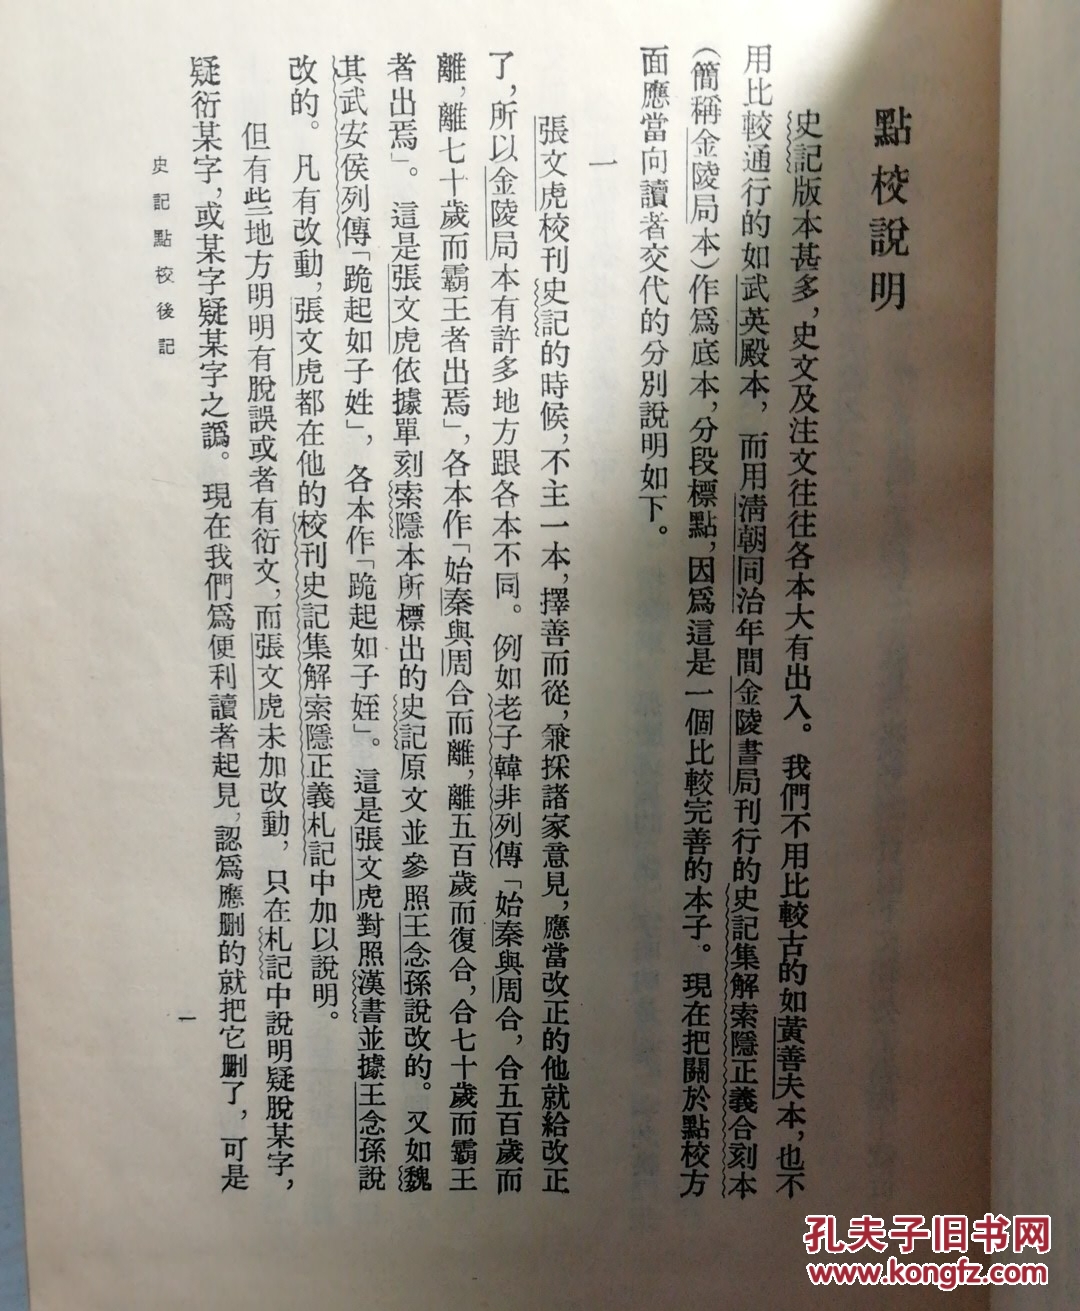 史记》是西汉史学家司马迁撰写的纪传体史书,